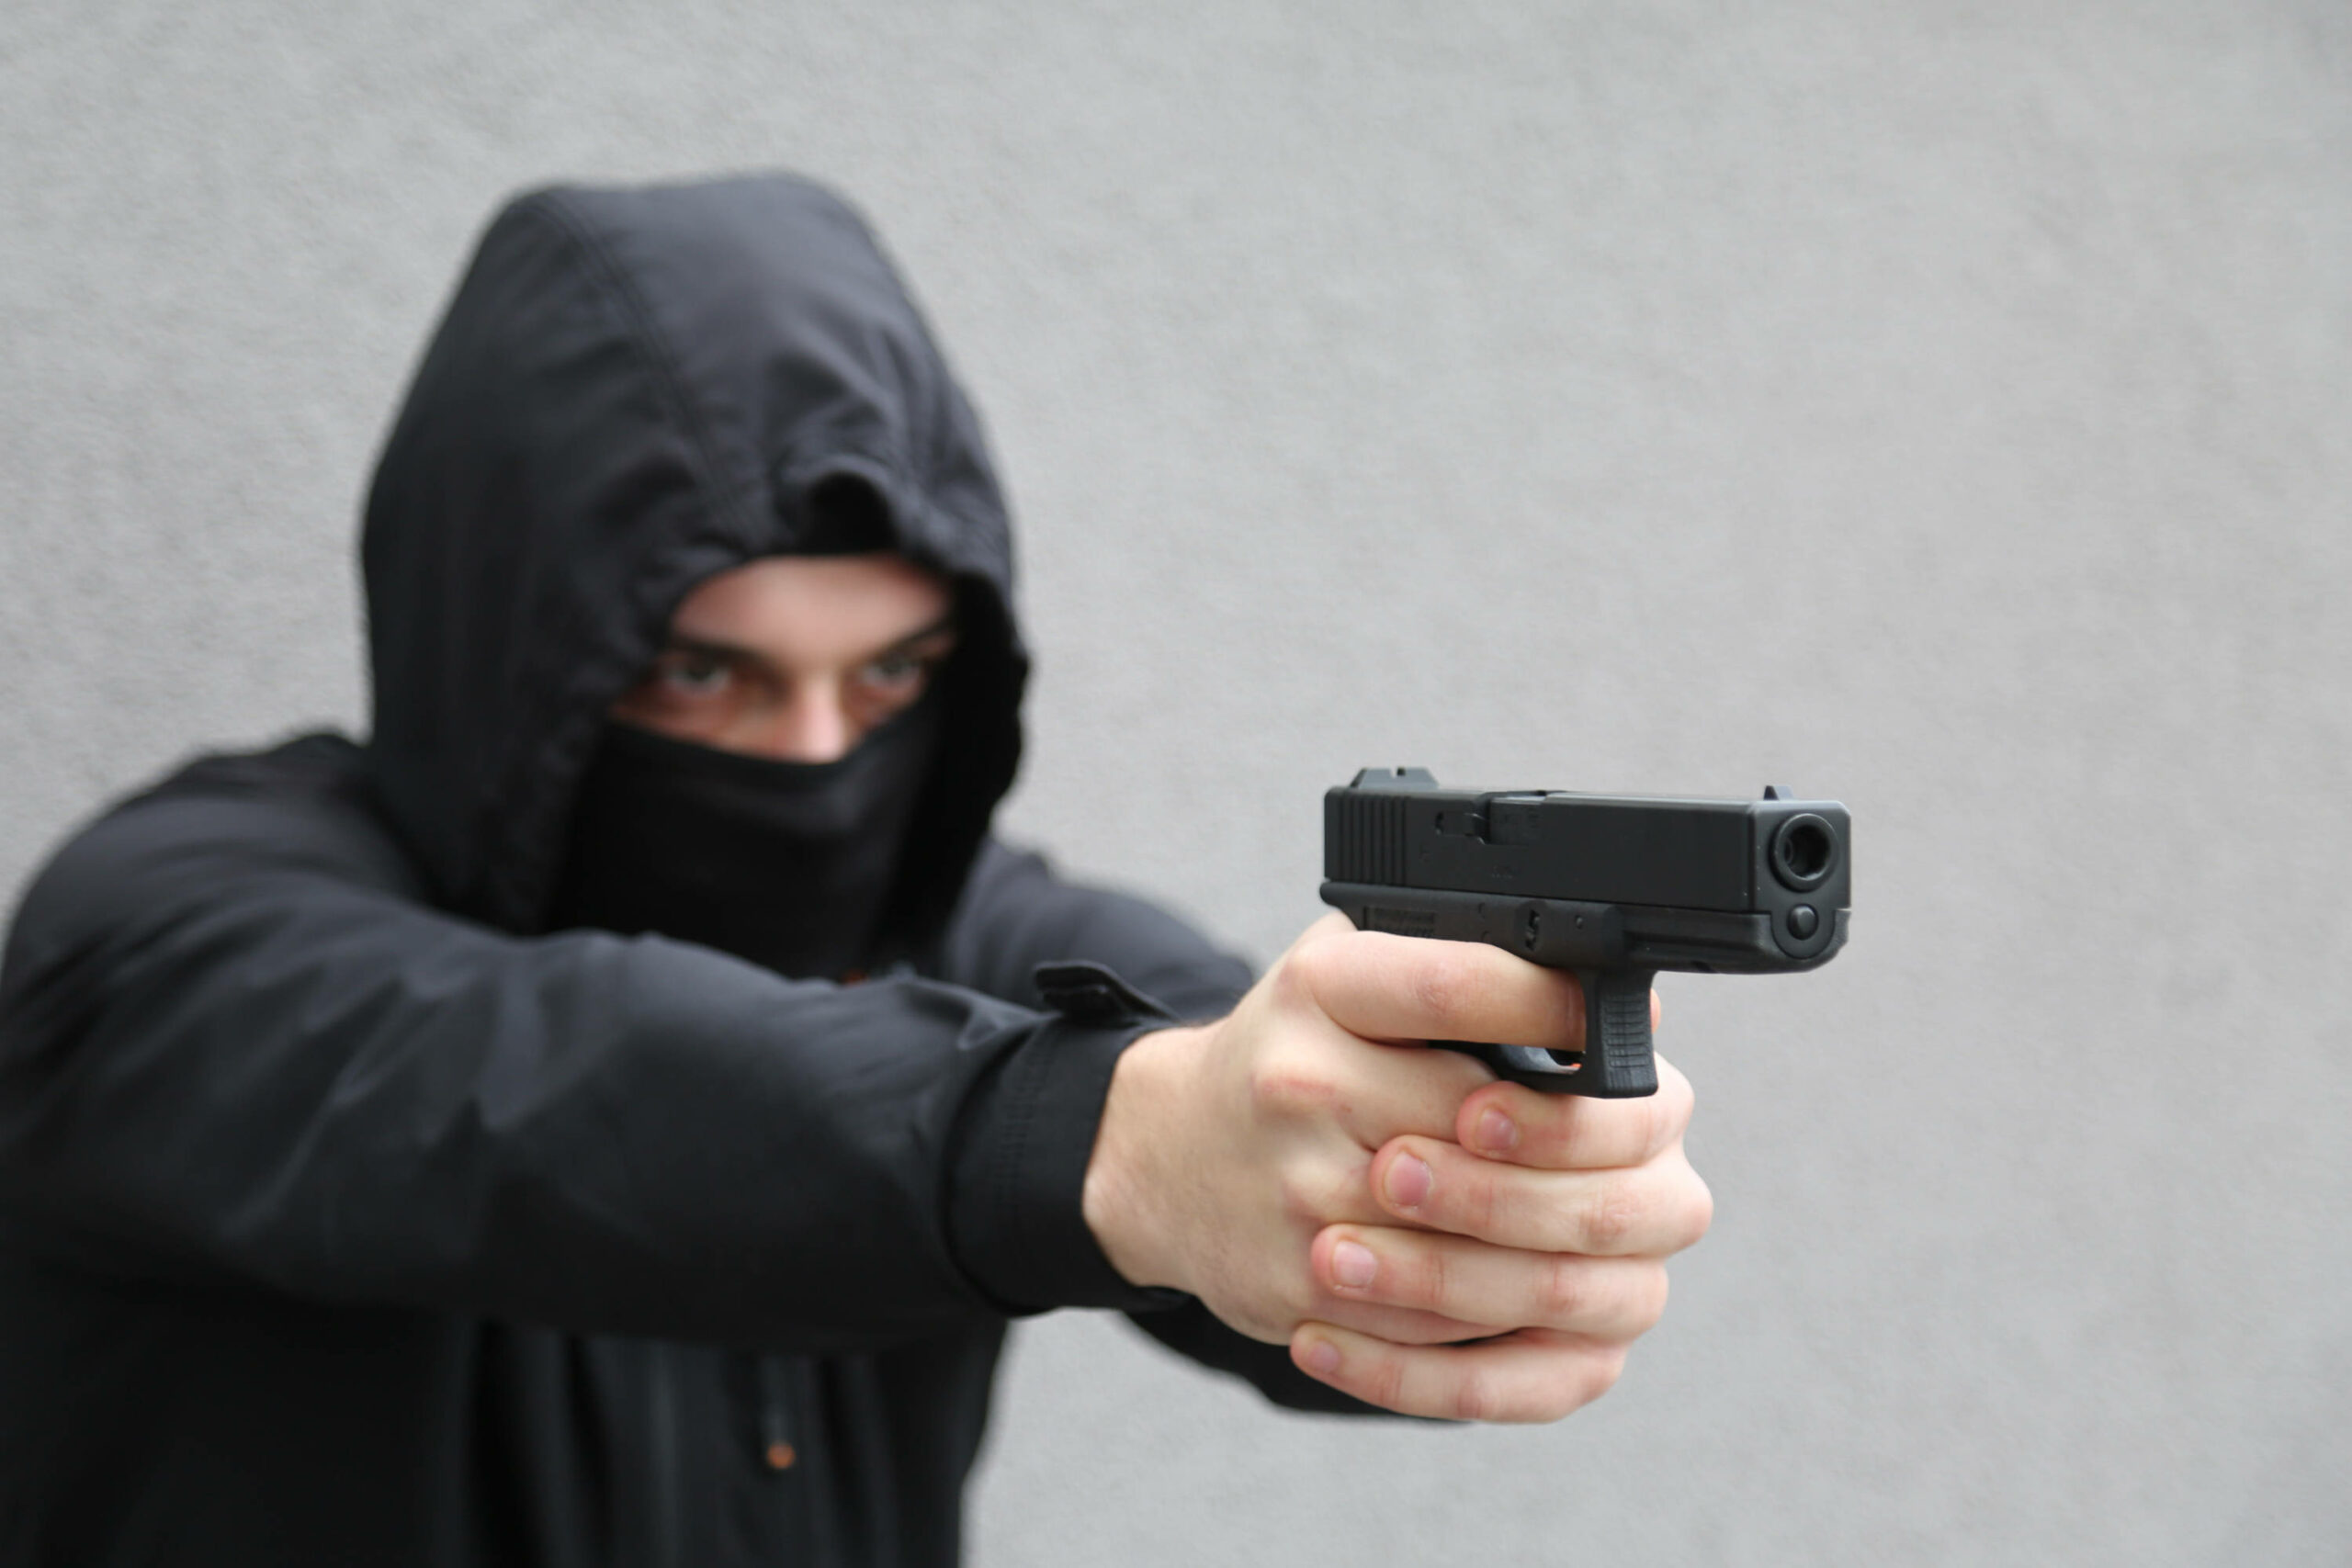 Raub auf Kiosk in Heimfeld – Angestellter mit Waffe bedroht